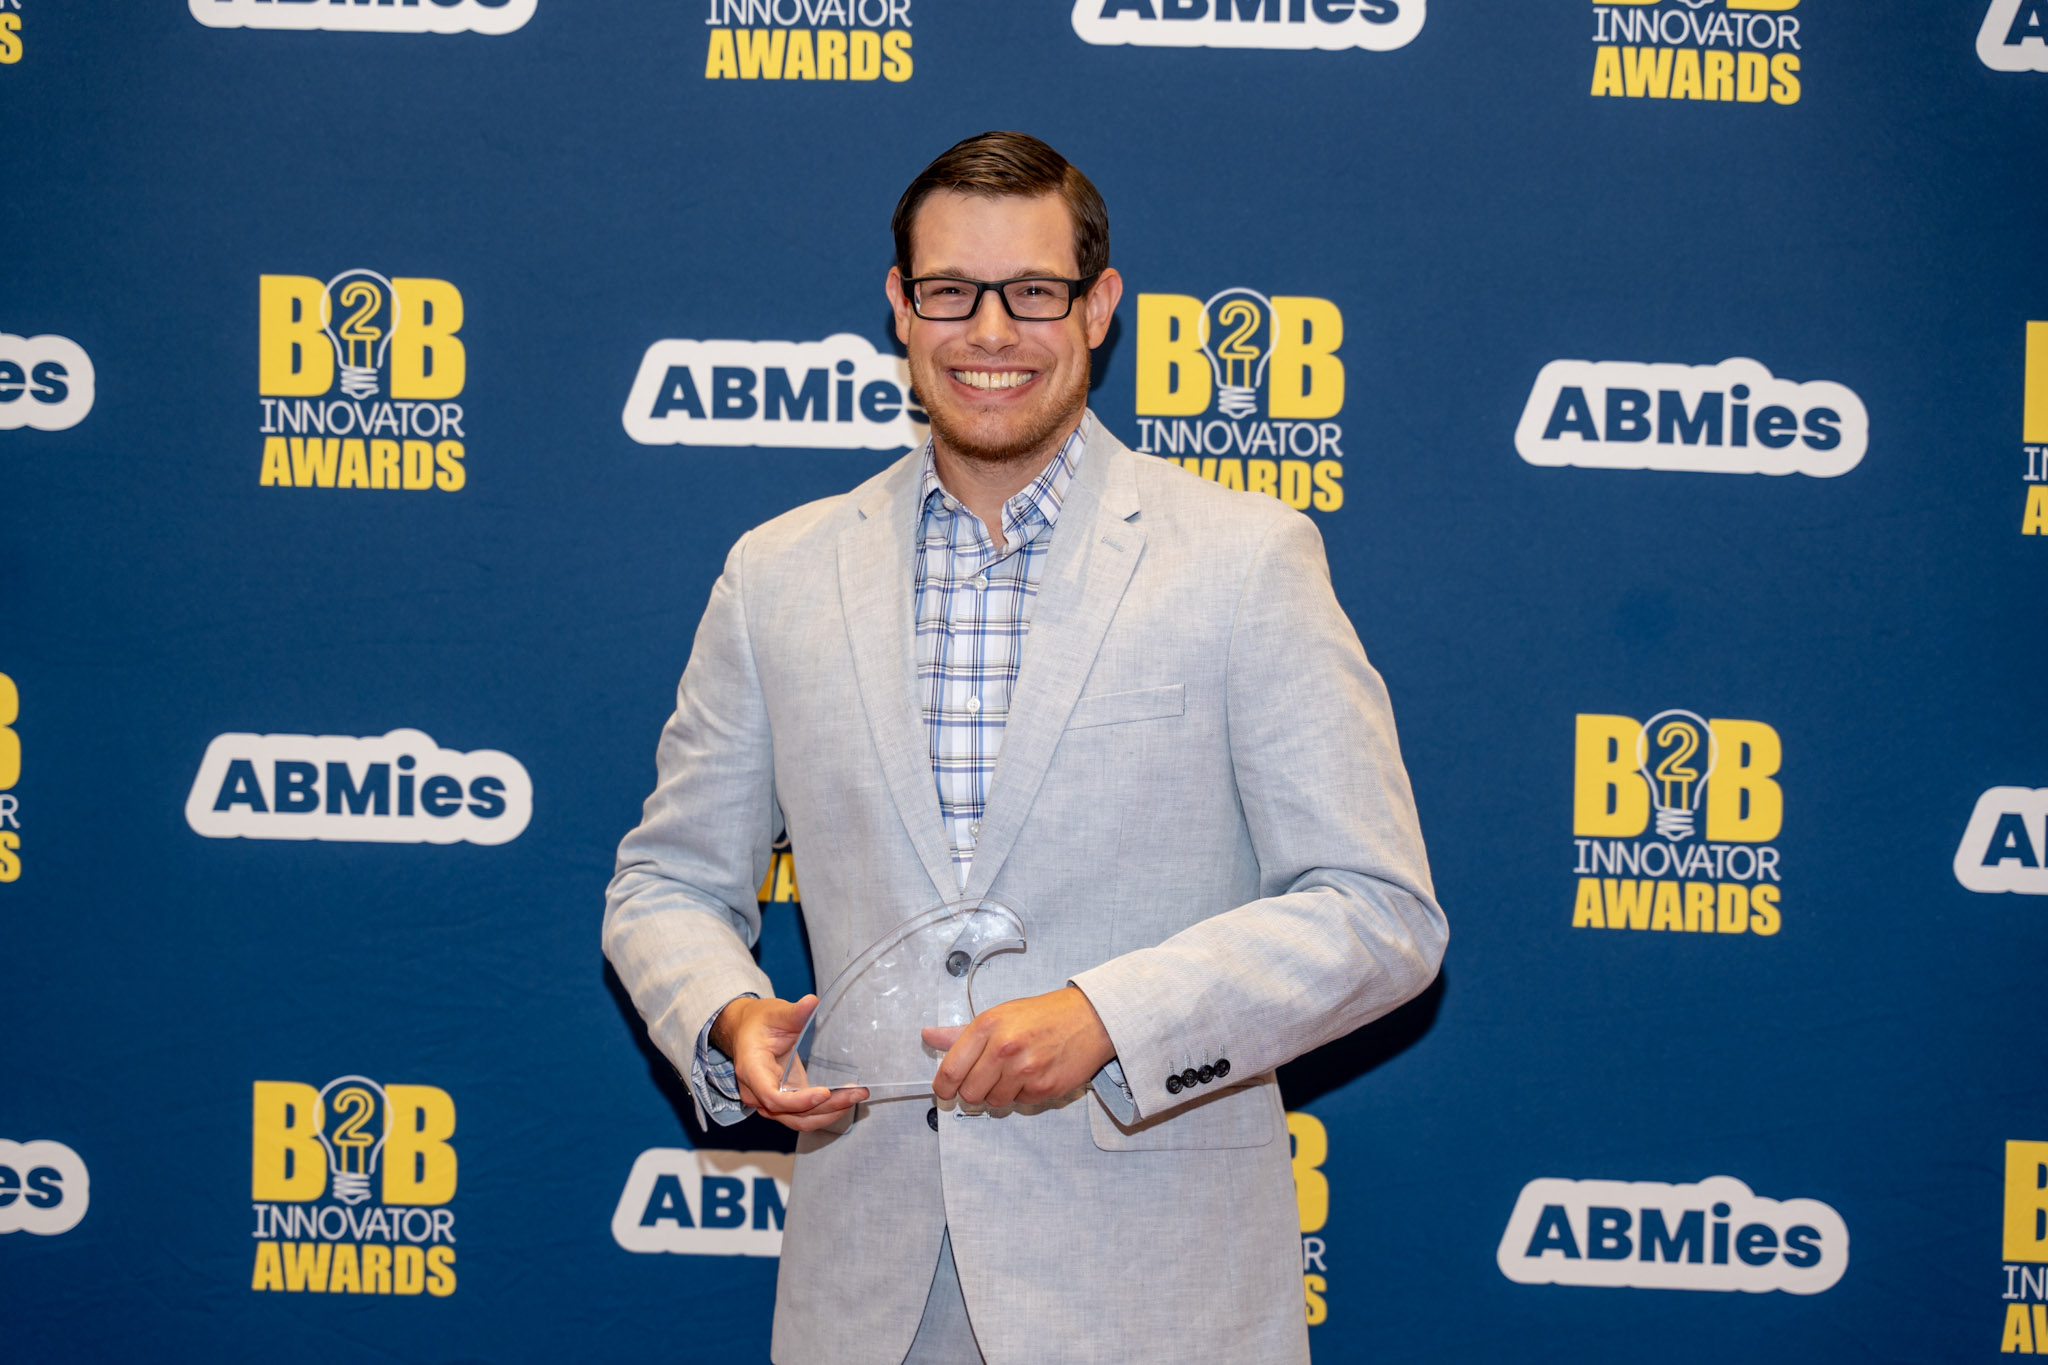 David earning his B2B Innovator Award